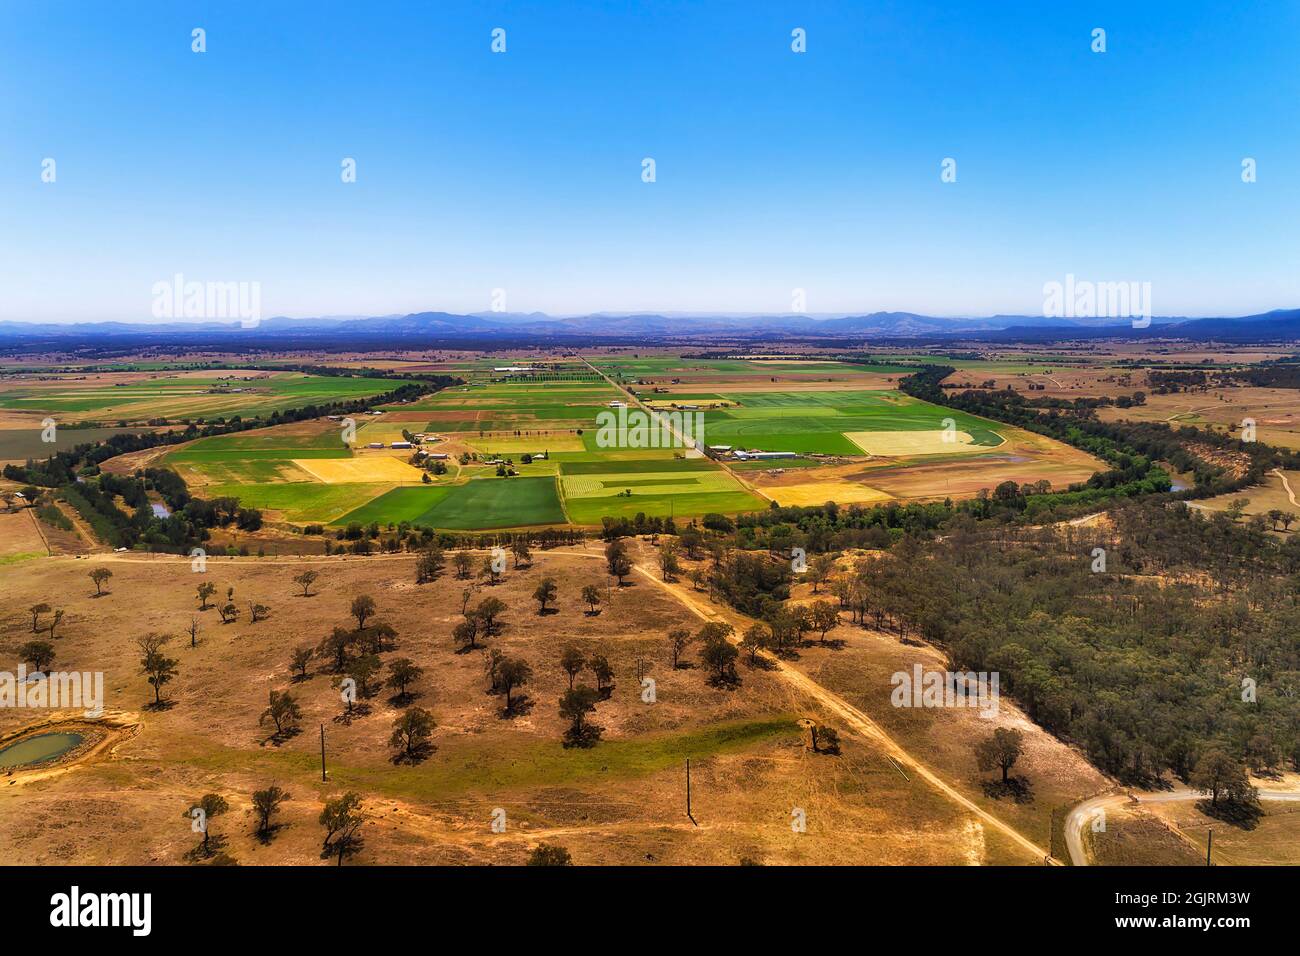 Hunter River in einer Schleife Form um kultivierte landwirtschaftliche Felder und Farmen in einem breiten Tal der Jäger-Region - Luftbild Landschaft, Australien. Stockfoto